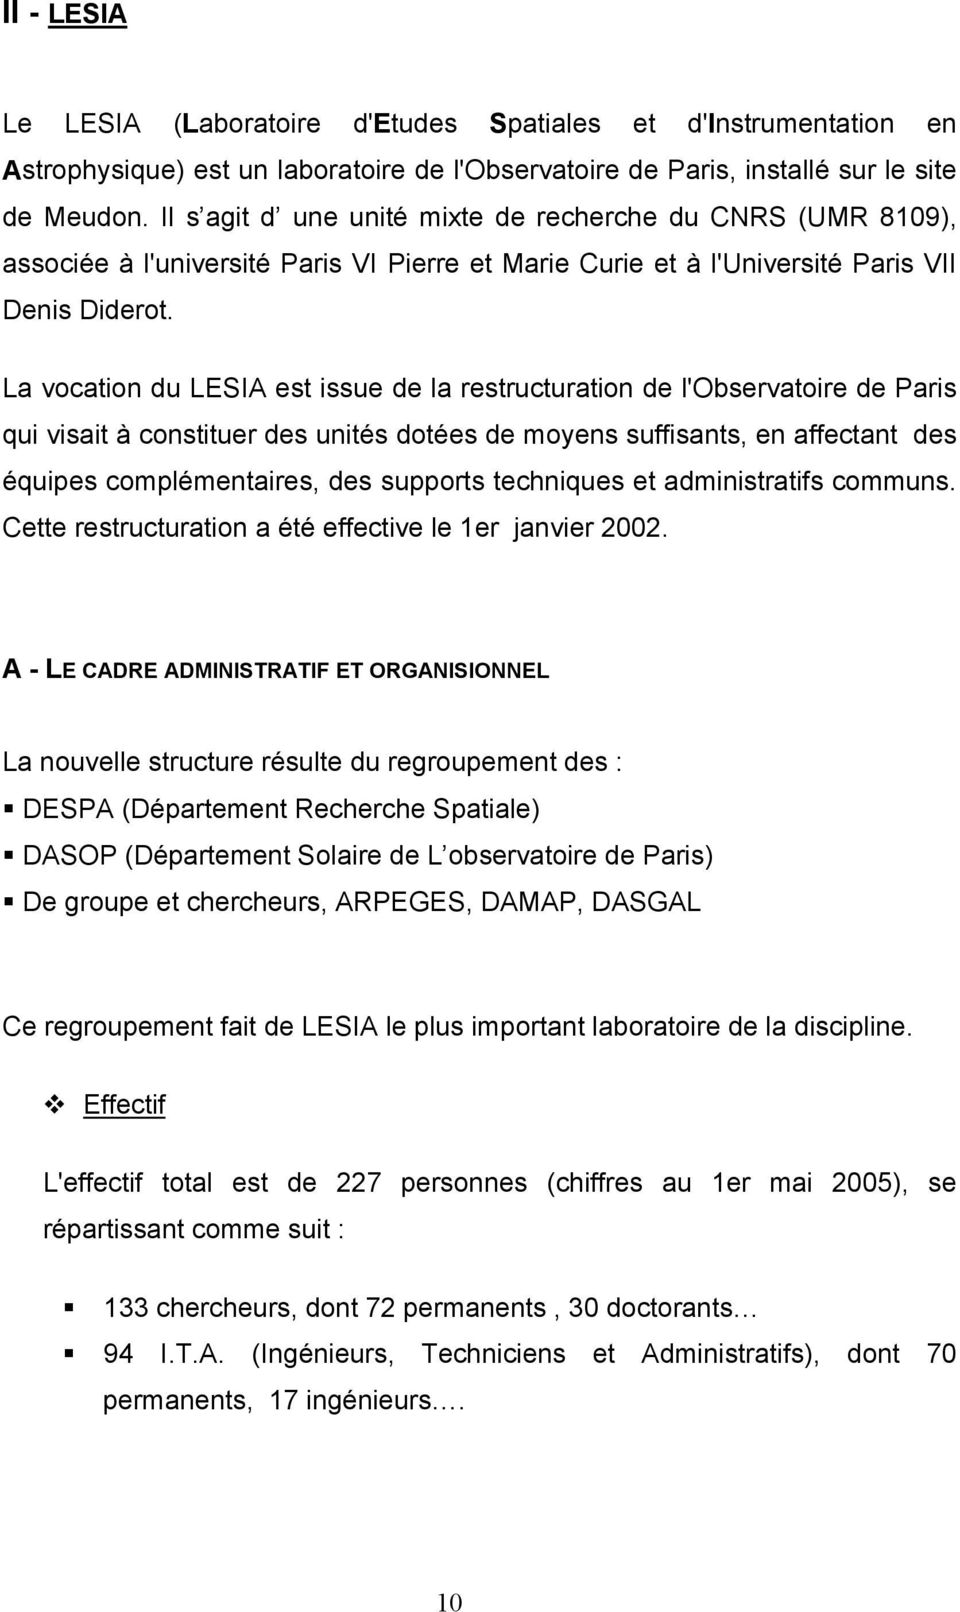 La vocation du LESIA est issue de la restructuration de l'observatoire de Paris qui visait à constituer des unités dotées de moyens suffisants, en affectant des équipes complémentaires, des supports